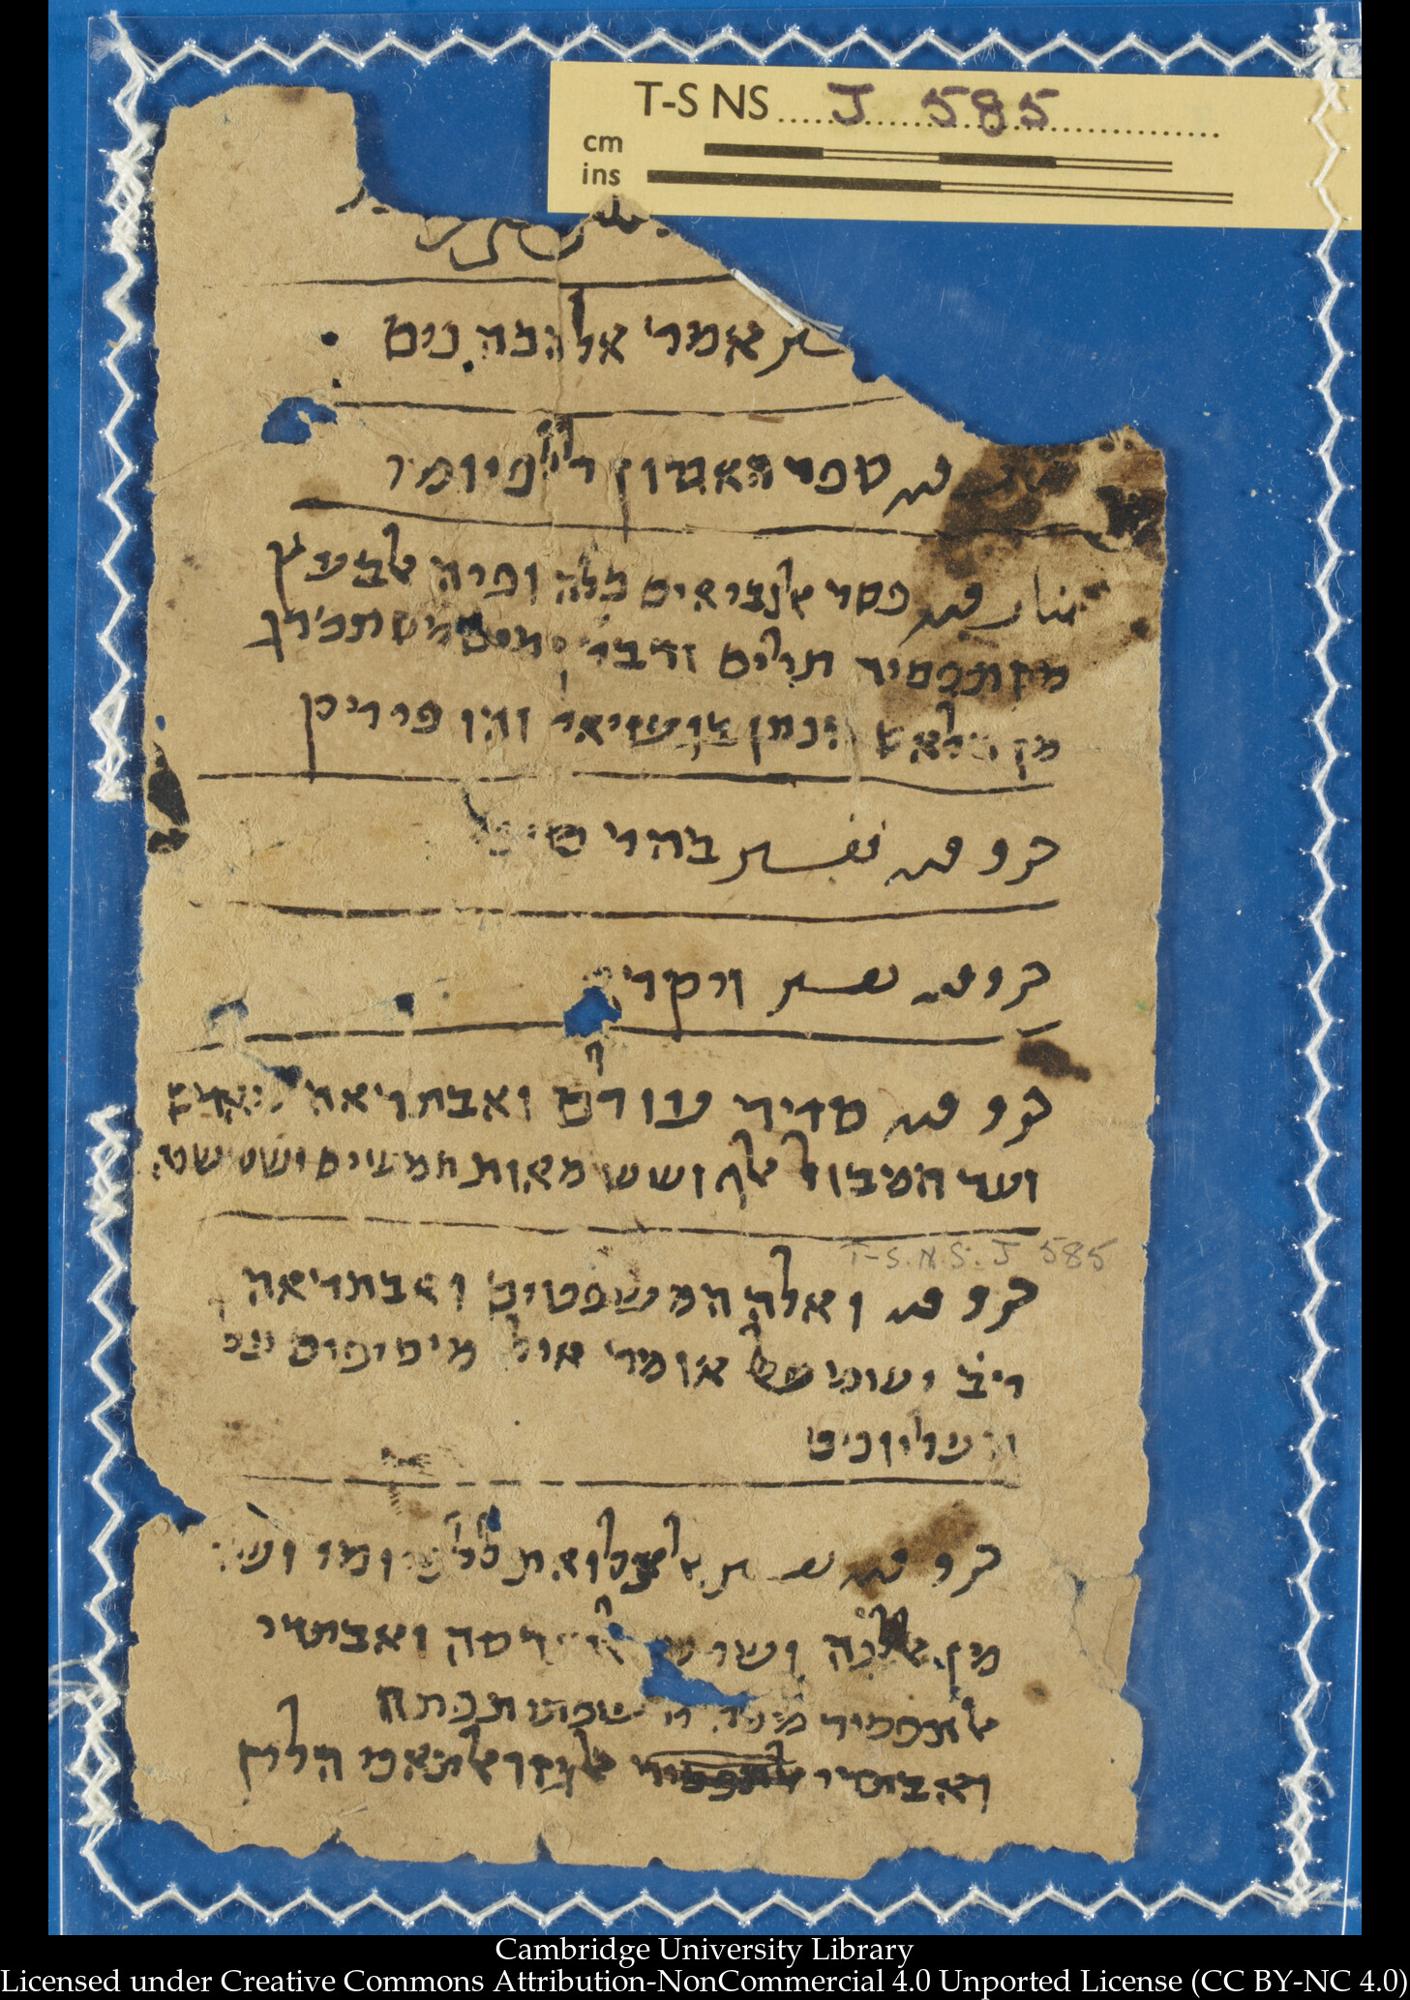 Image of item, e.g. a manuscript page